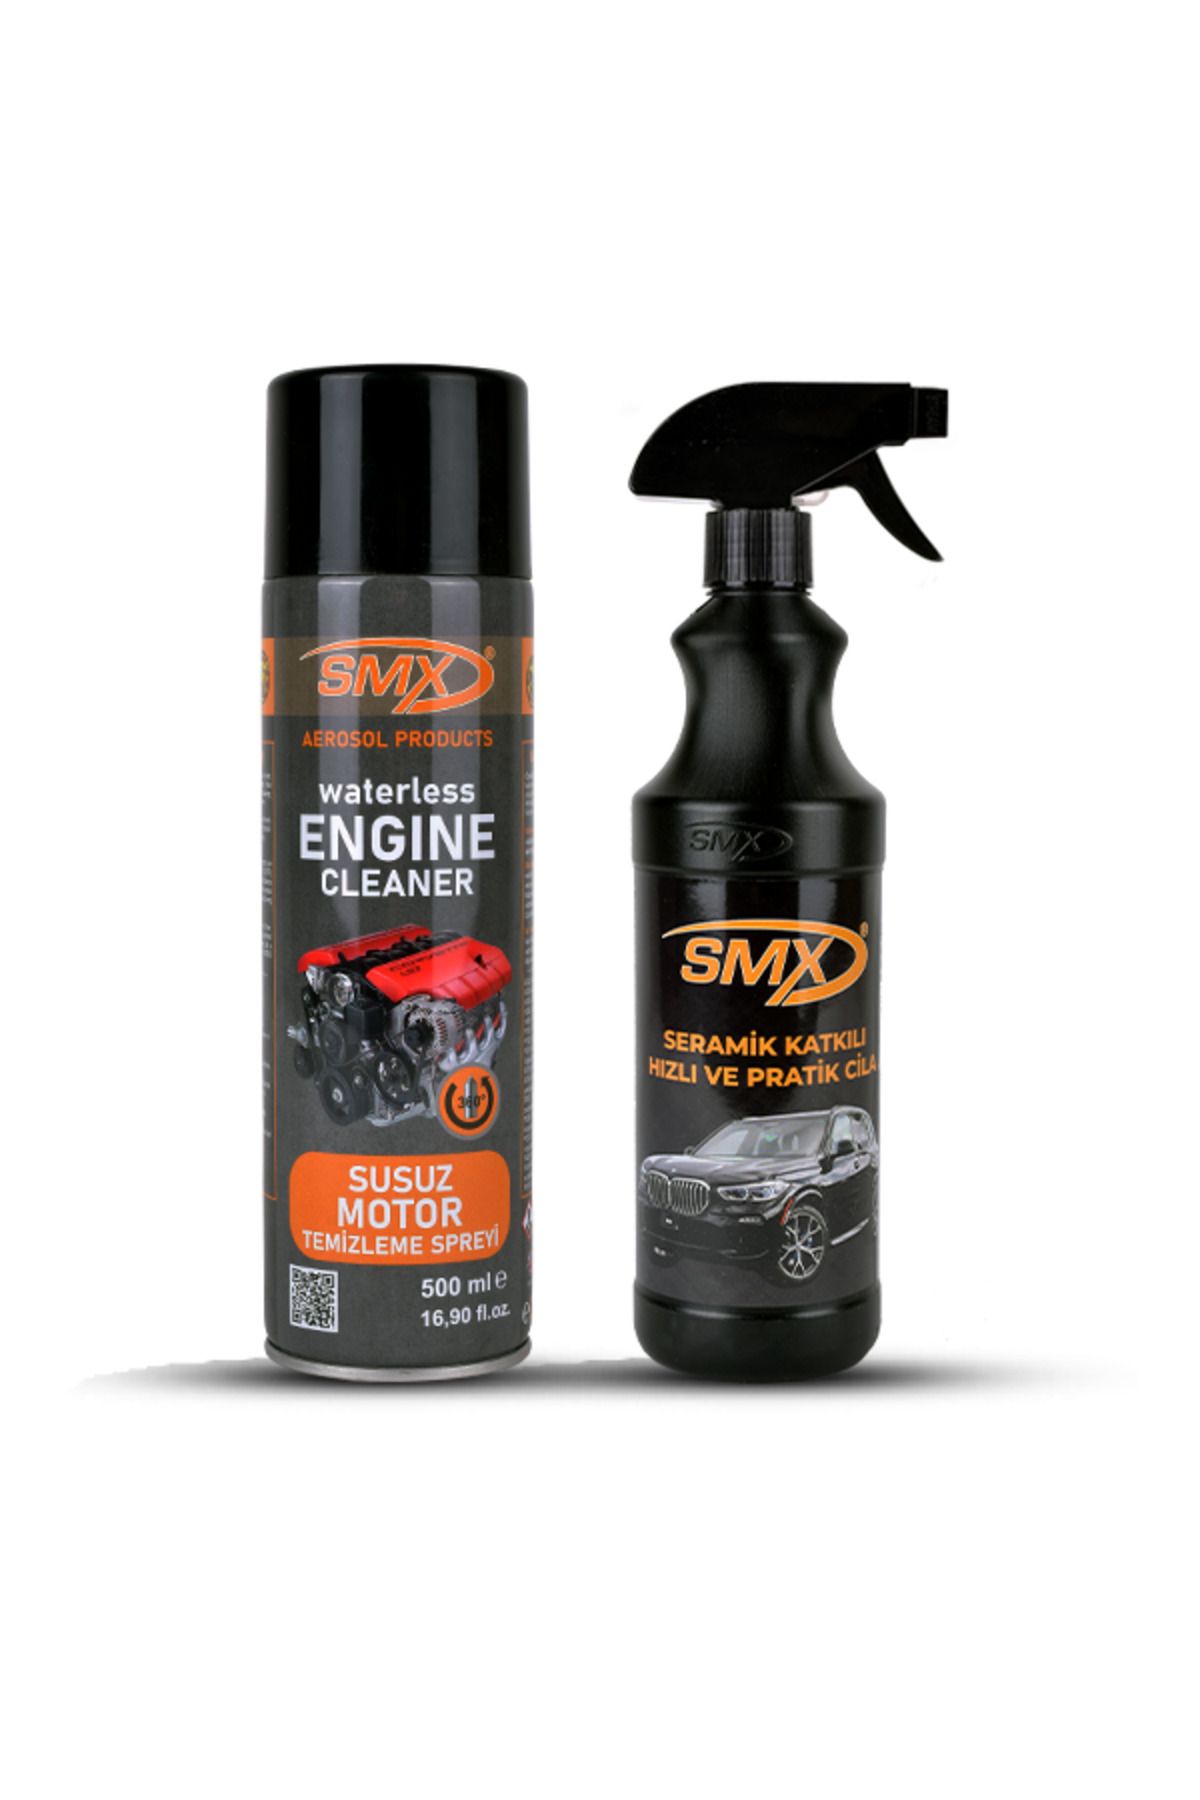 SMX Susuz Motor Temizleme Spreyi Seramik Katkılı Hızlı Ve Pratik Cila